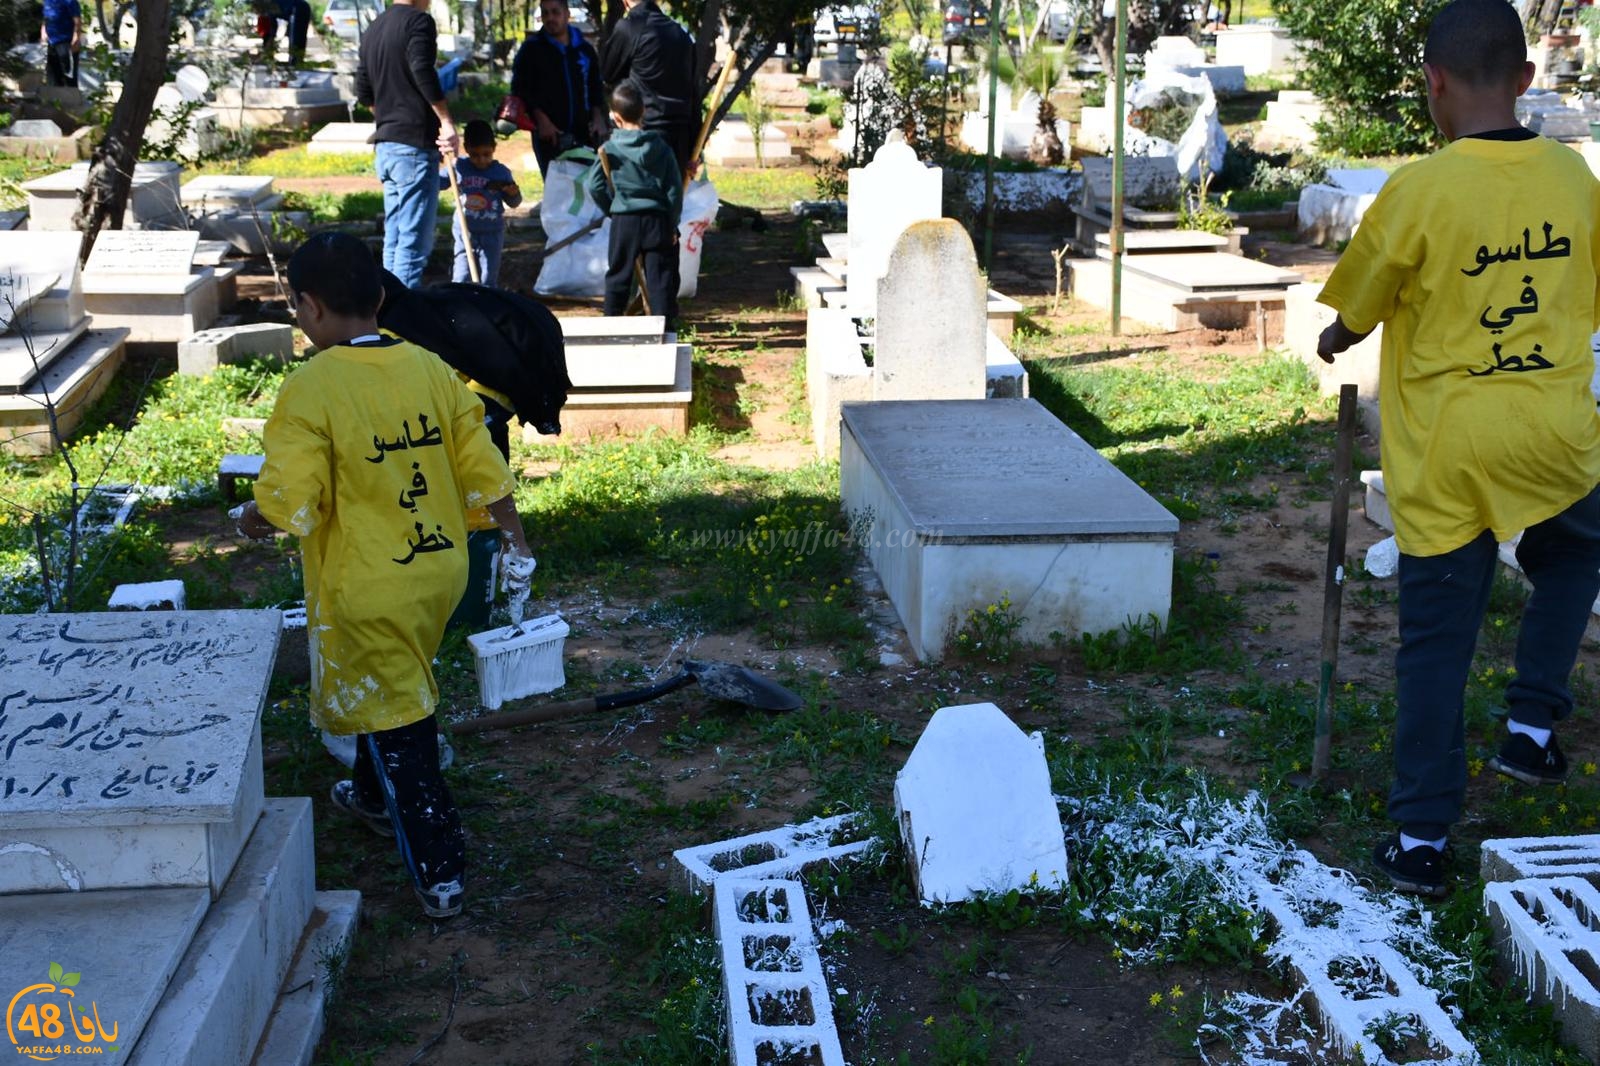  فيديو: جملة مشاريع في مقبرة طاسو - شق طريق واطلاق مشروع لتنظيم الدفن